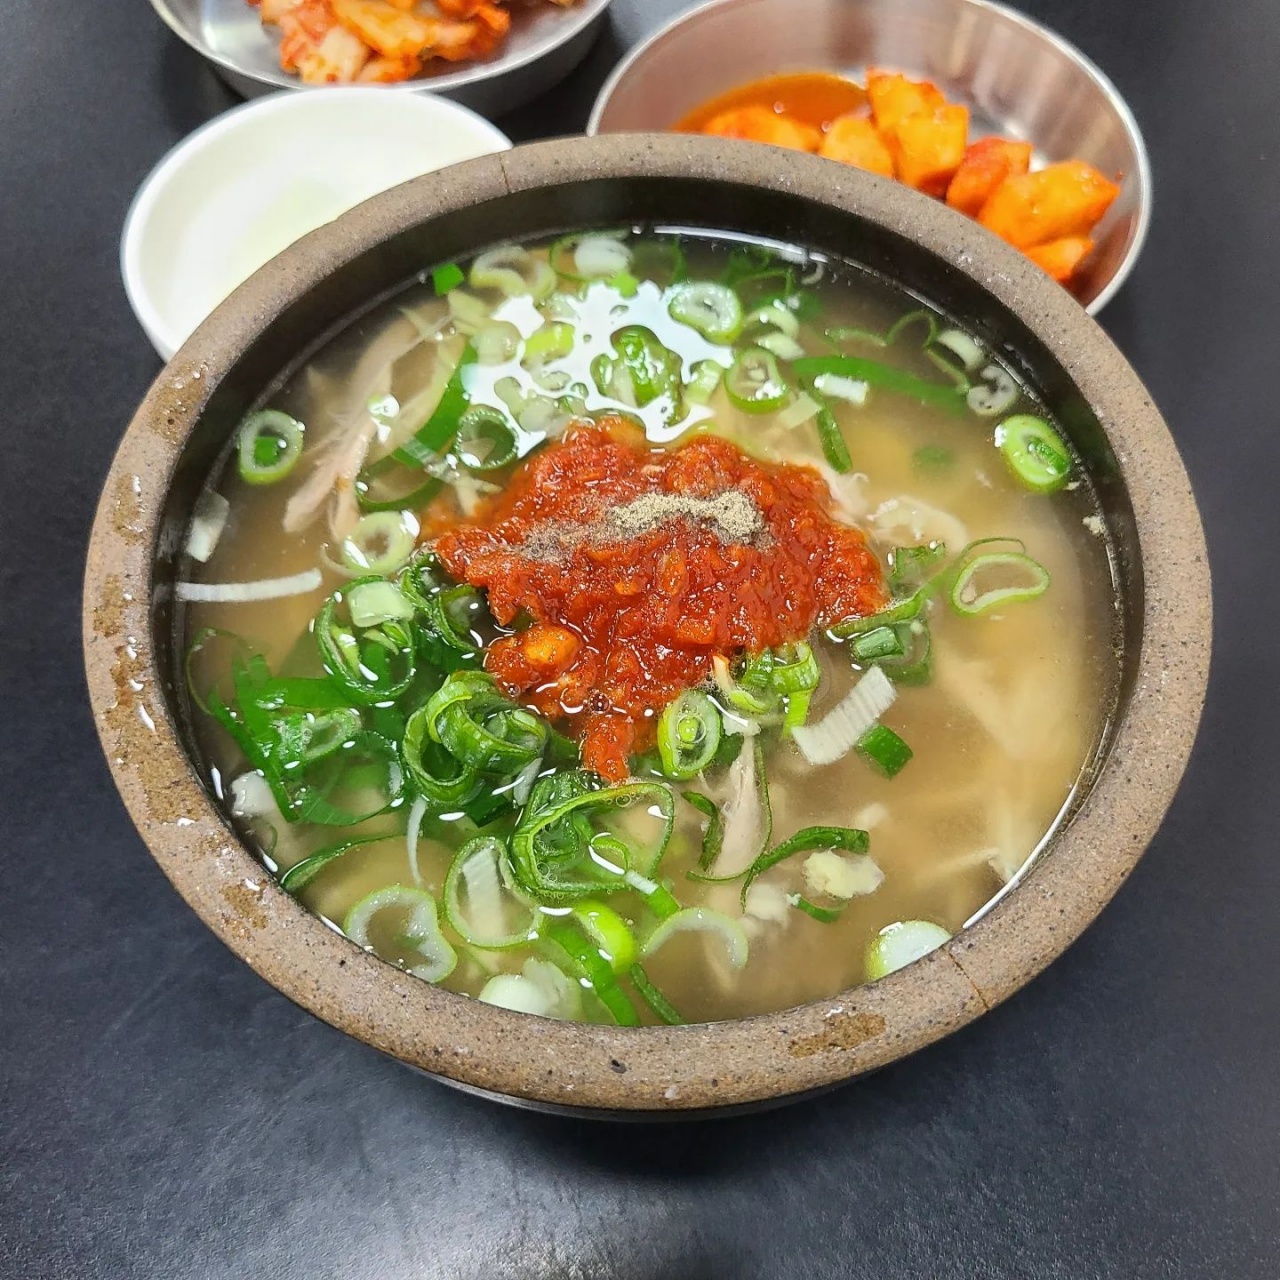 이열치열 따끈한 국물로 기력 충전! 서울 곰탕 맛집 BEST 5